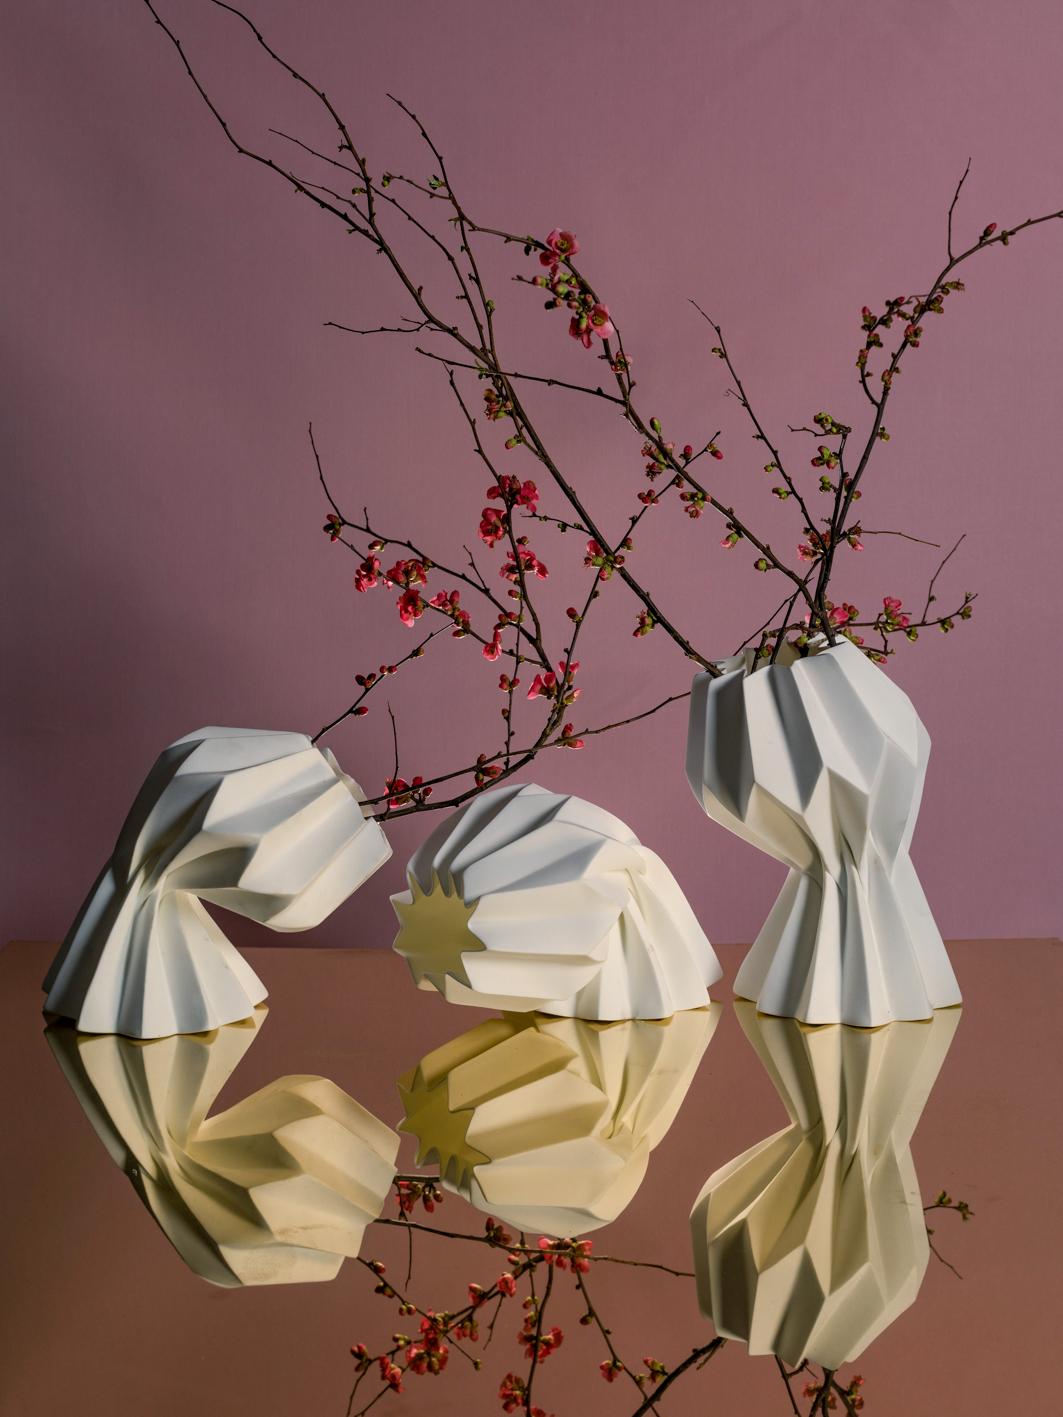 English “Slump” Contemporary Origami Ceramic Vase by Studio Morison, No Slump Variation